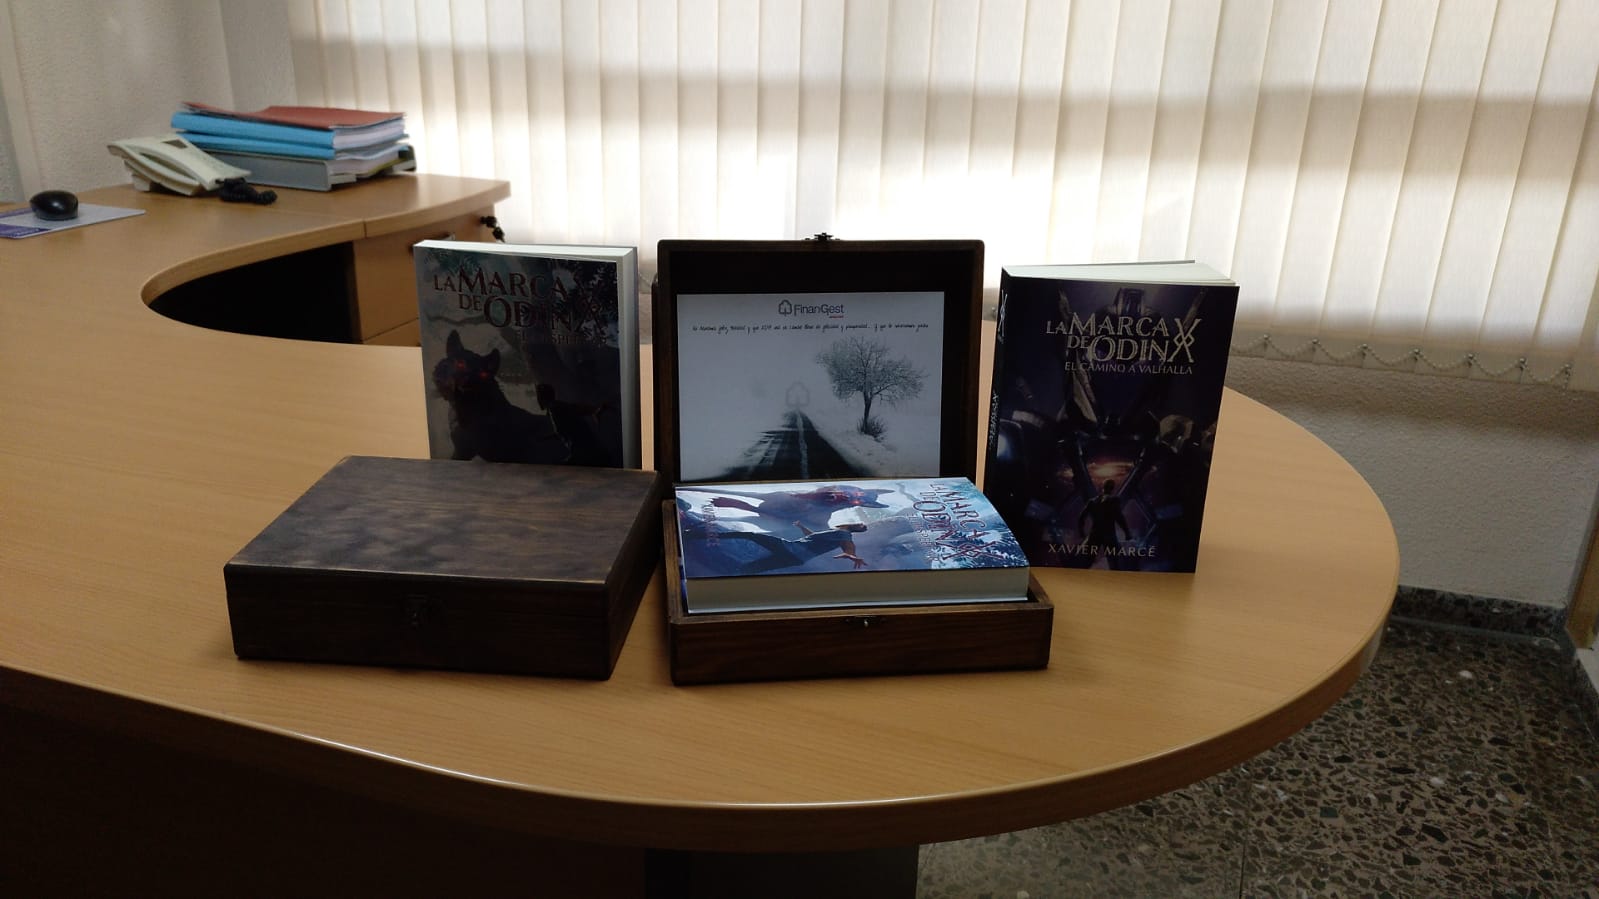 La asesoría y gestoría de Alicante, Finangest, regaló los libros de La marca de Odín a sus clientes por Navidad